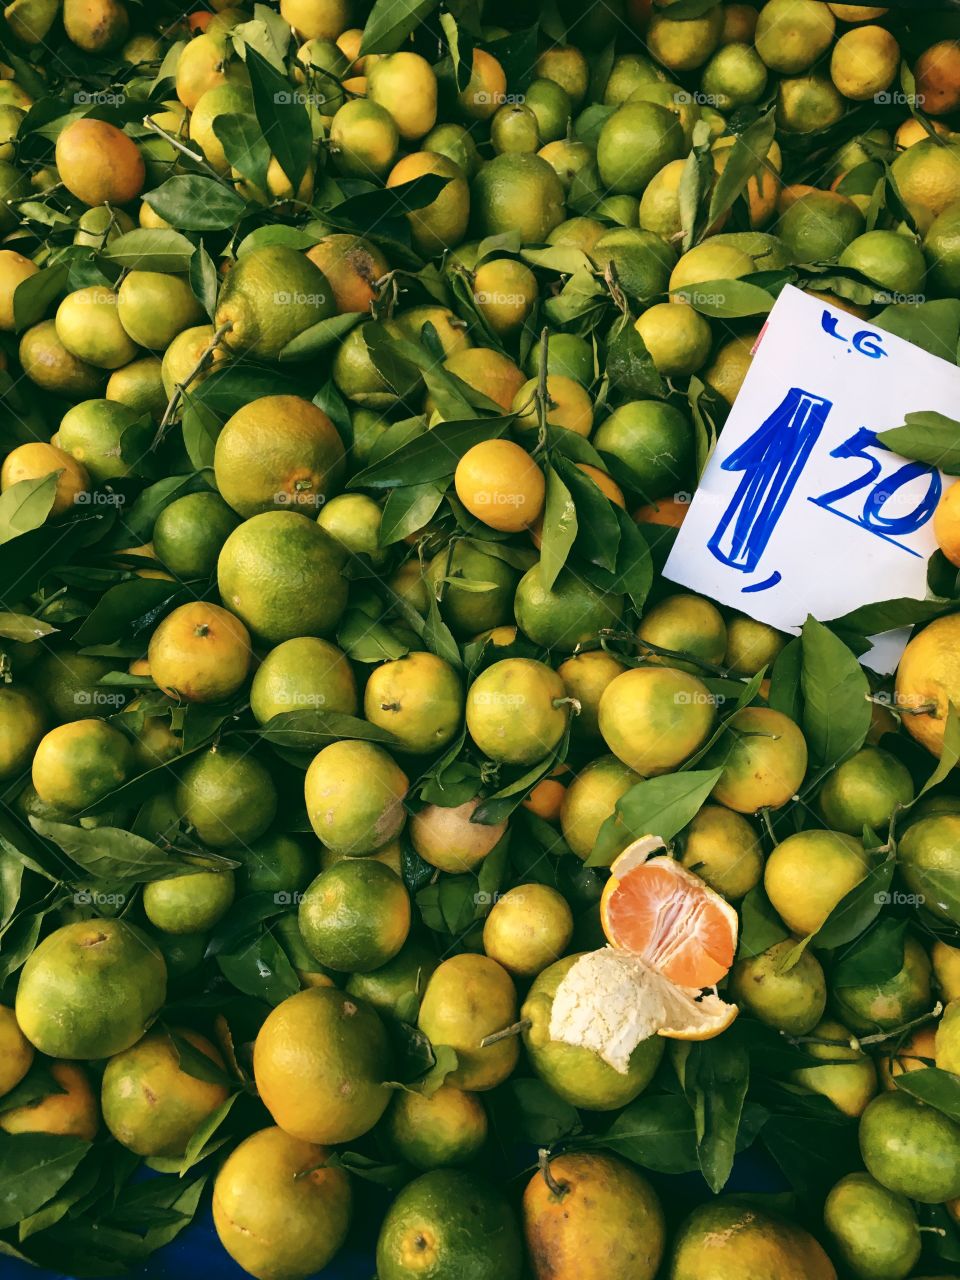 Oranges on Turkish market.